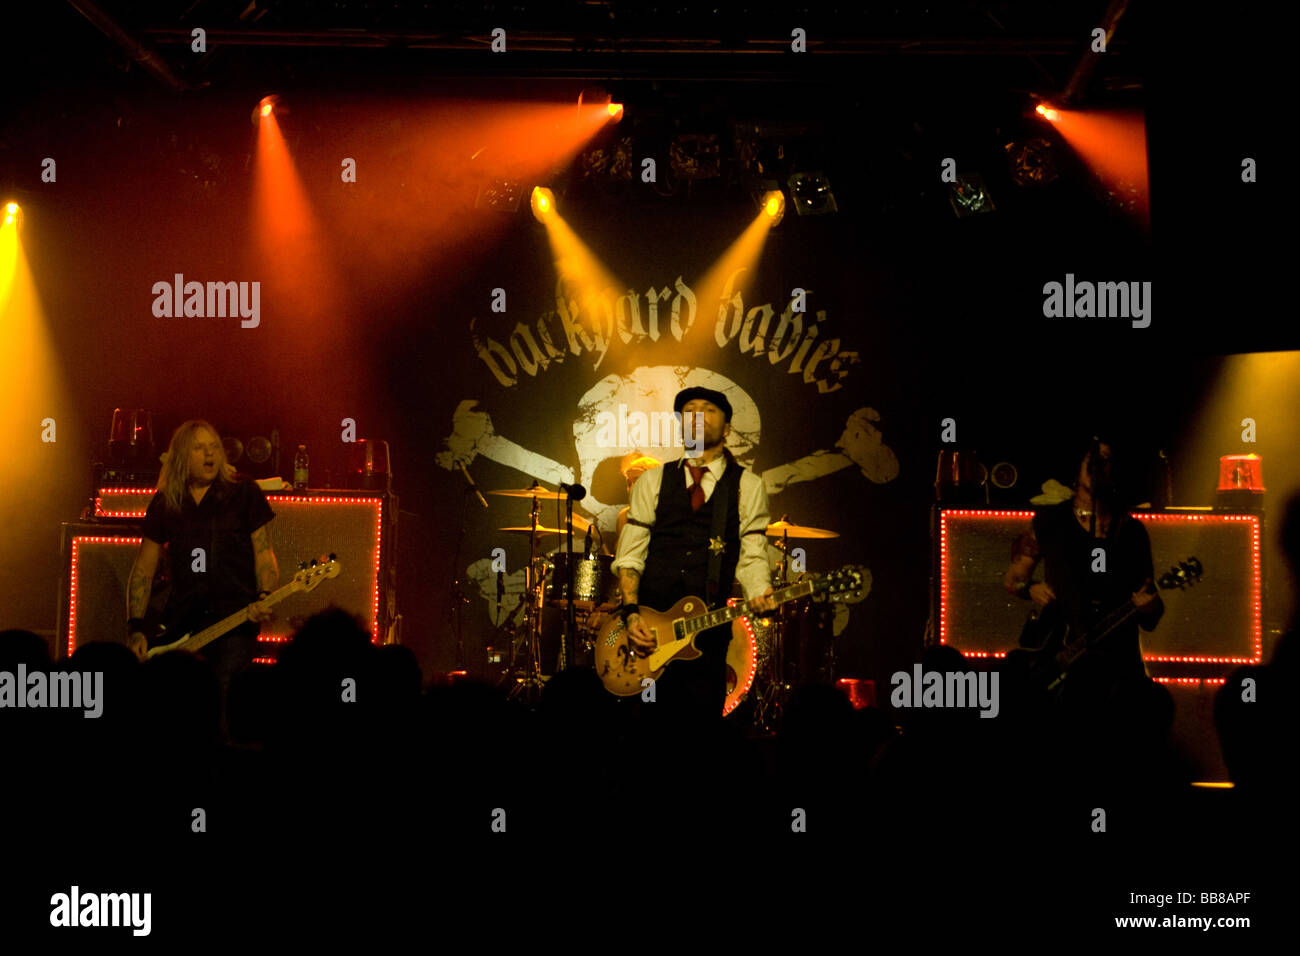 Le groupe de rock suédois Backyard Babies en live à Schueuer concert hall, Lucerne, Suisse, Europe Banque D'Images